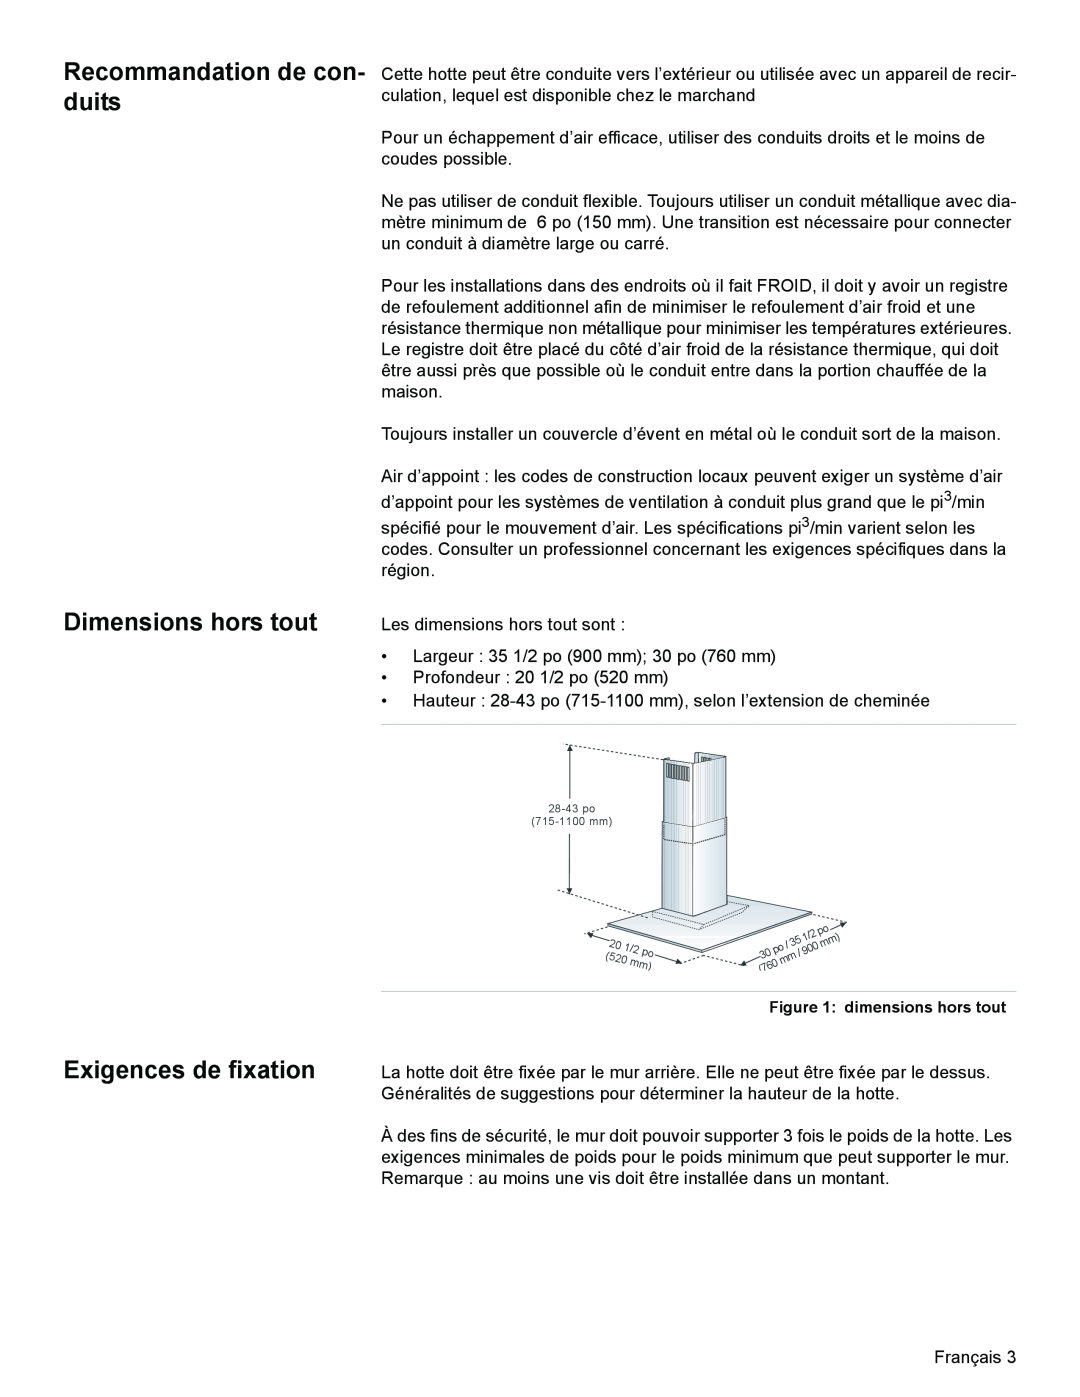 Bosch Appliances DKE96 Recommandation de con- duits Dimensions hors tout, Exigences de fixation, dimensions hors tout 